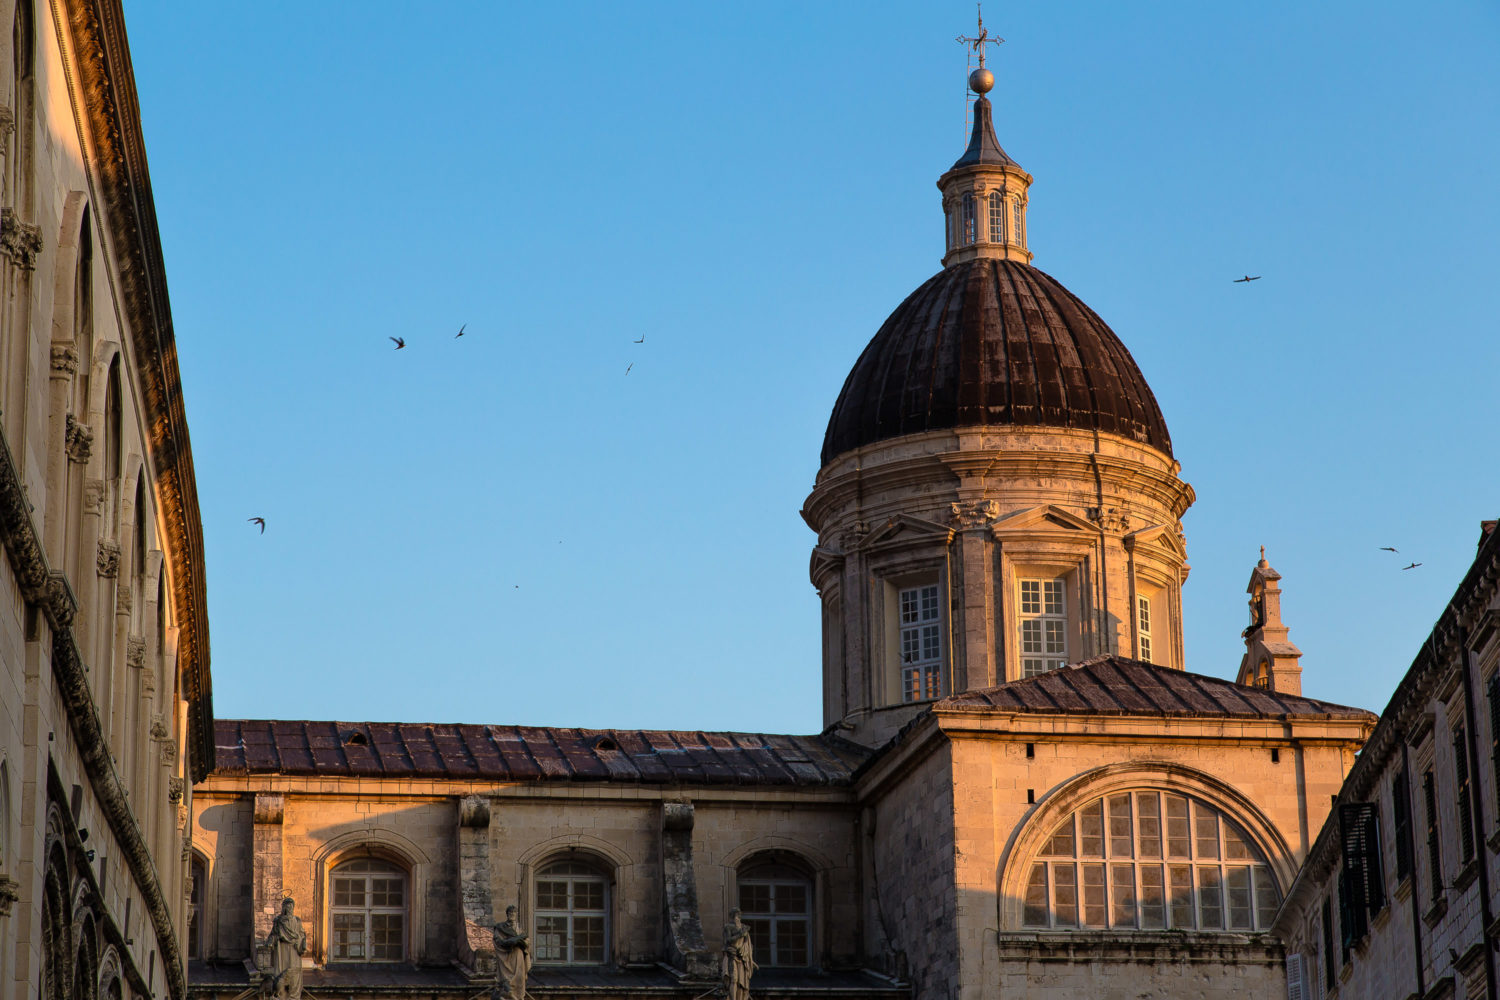 Kuppel einer Kirche in Dubrovnik mit kreisenden Vögeln